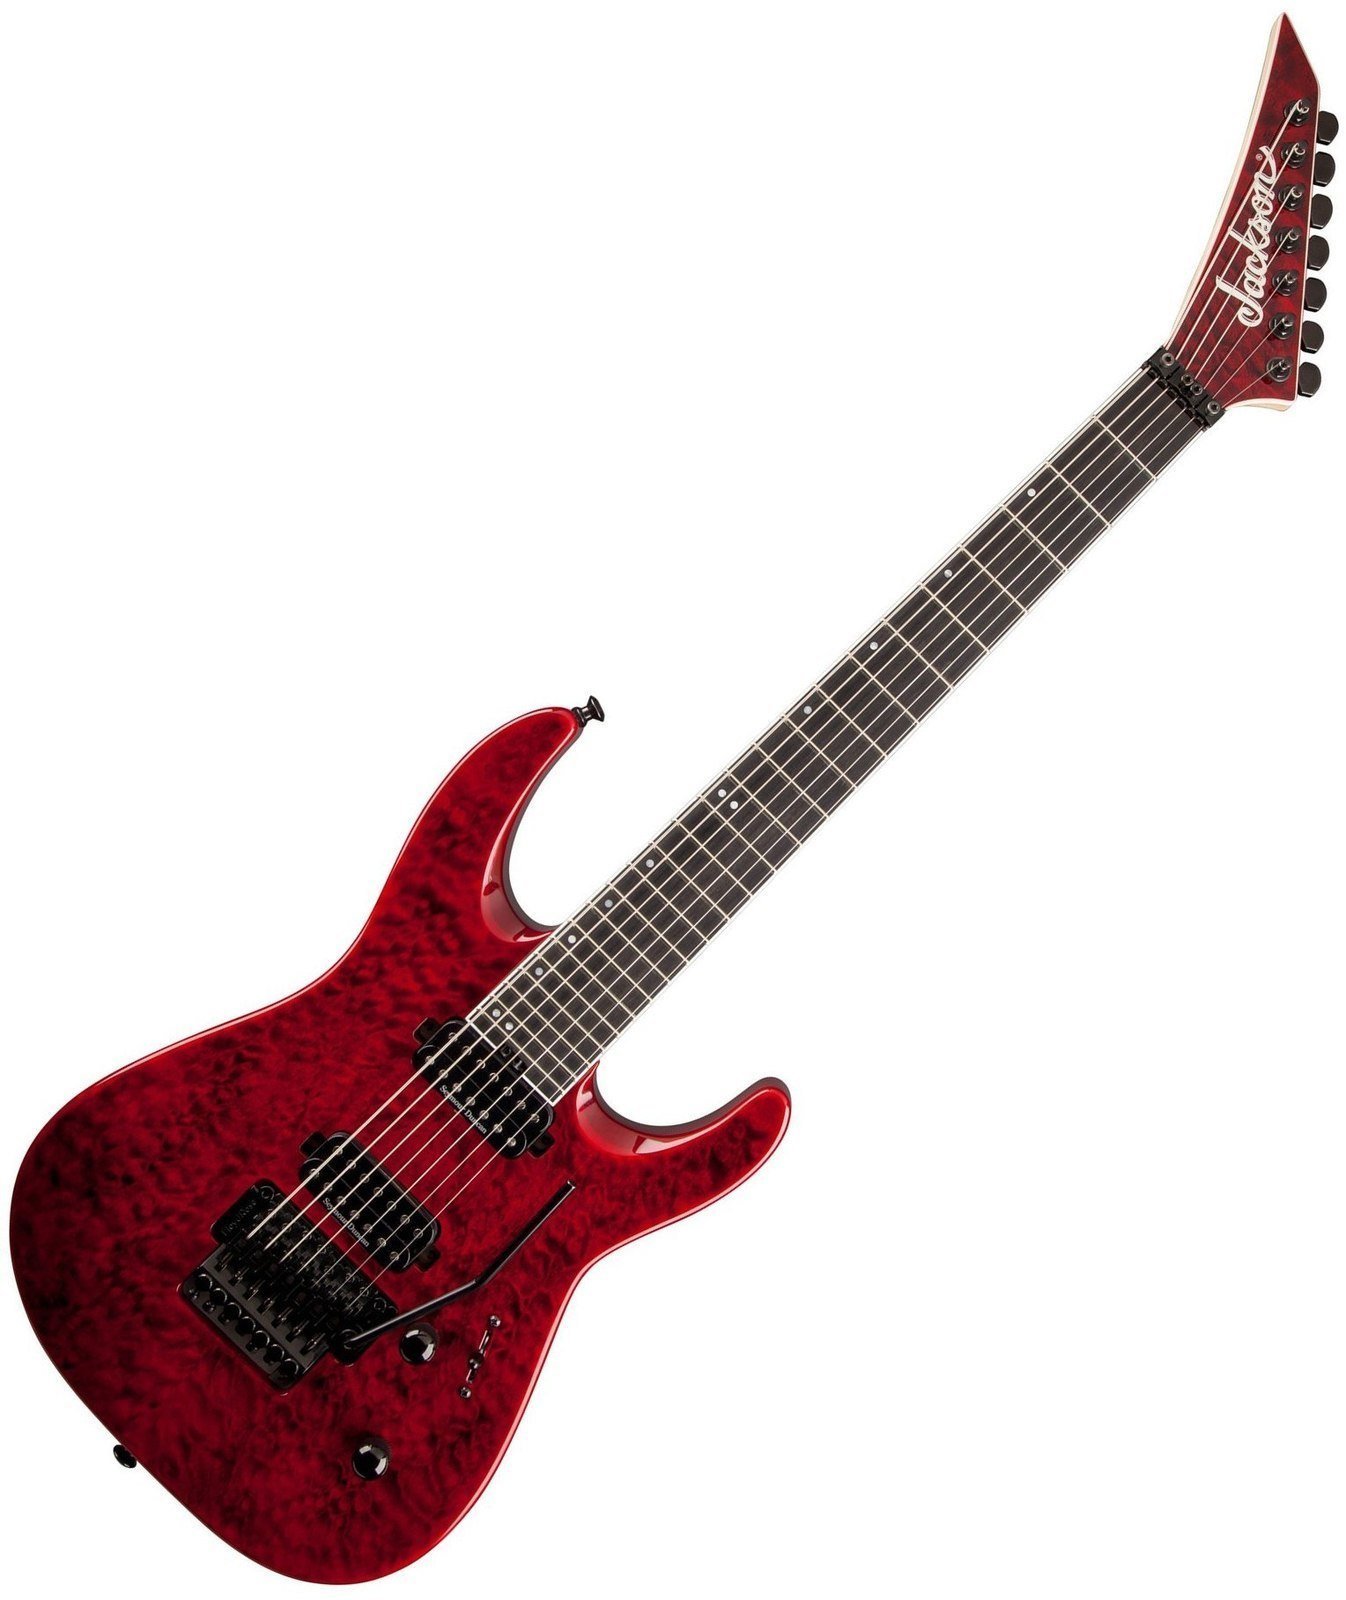 Ηλεκτρική Κιθάρα Jackson Pro DK7-Q Dinky Transparent Red